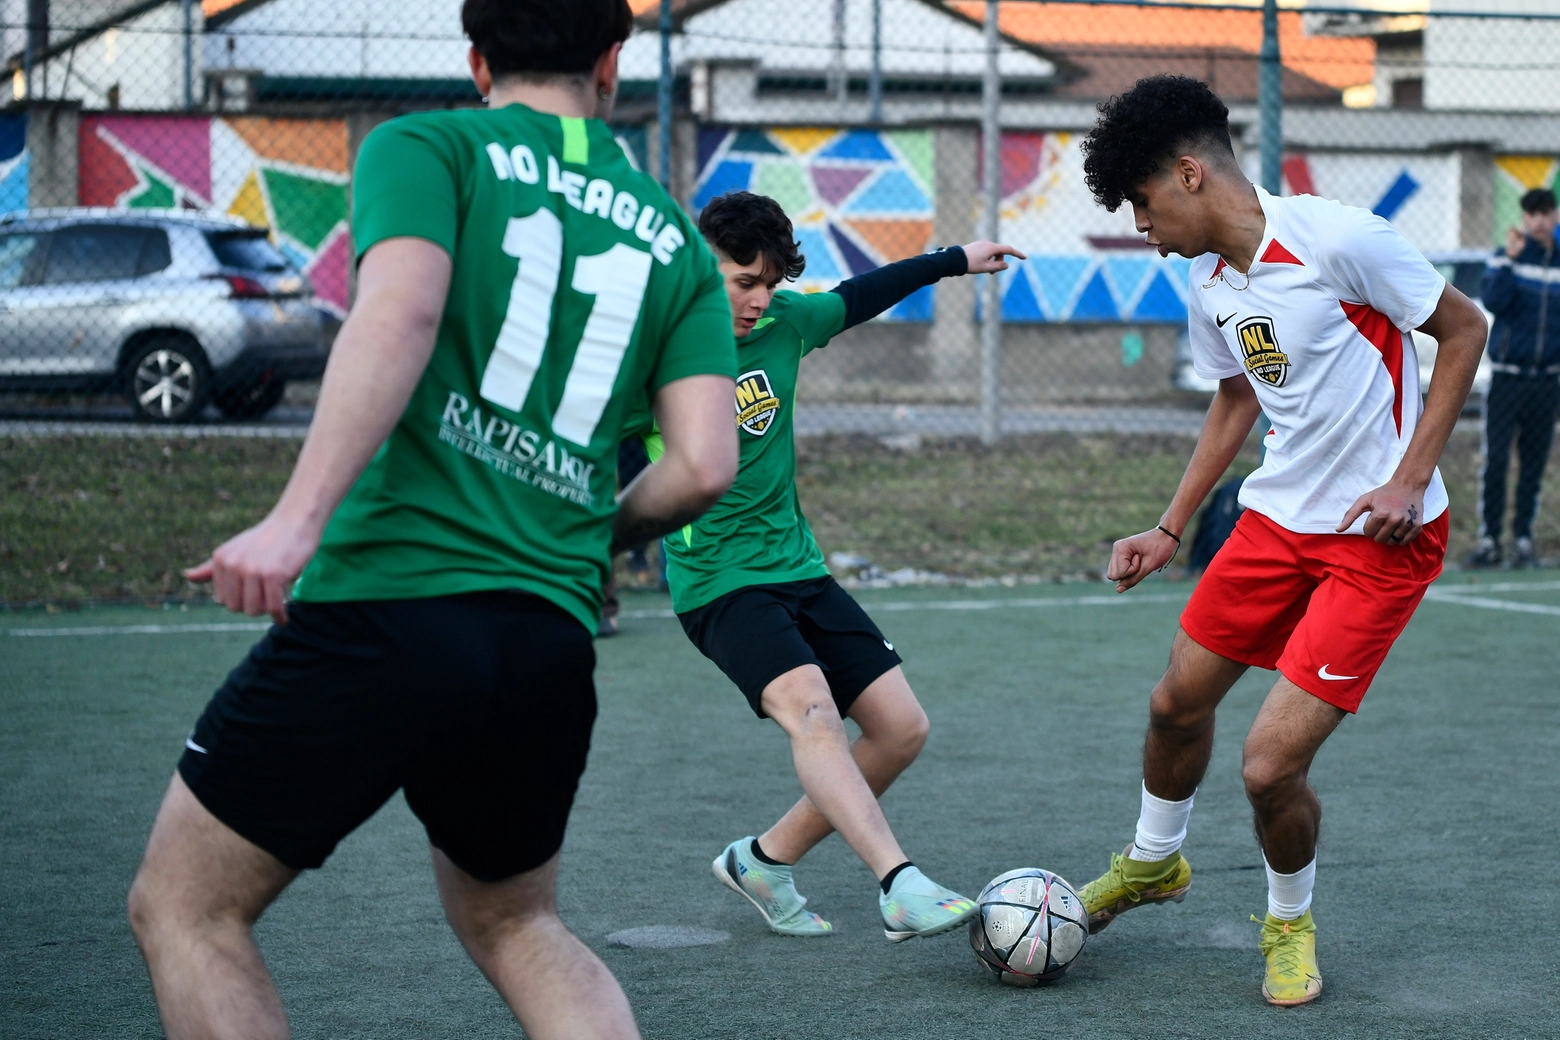 Un momento di sport e integrazione giovanile alla No League social games